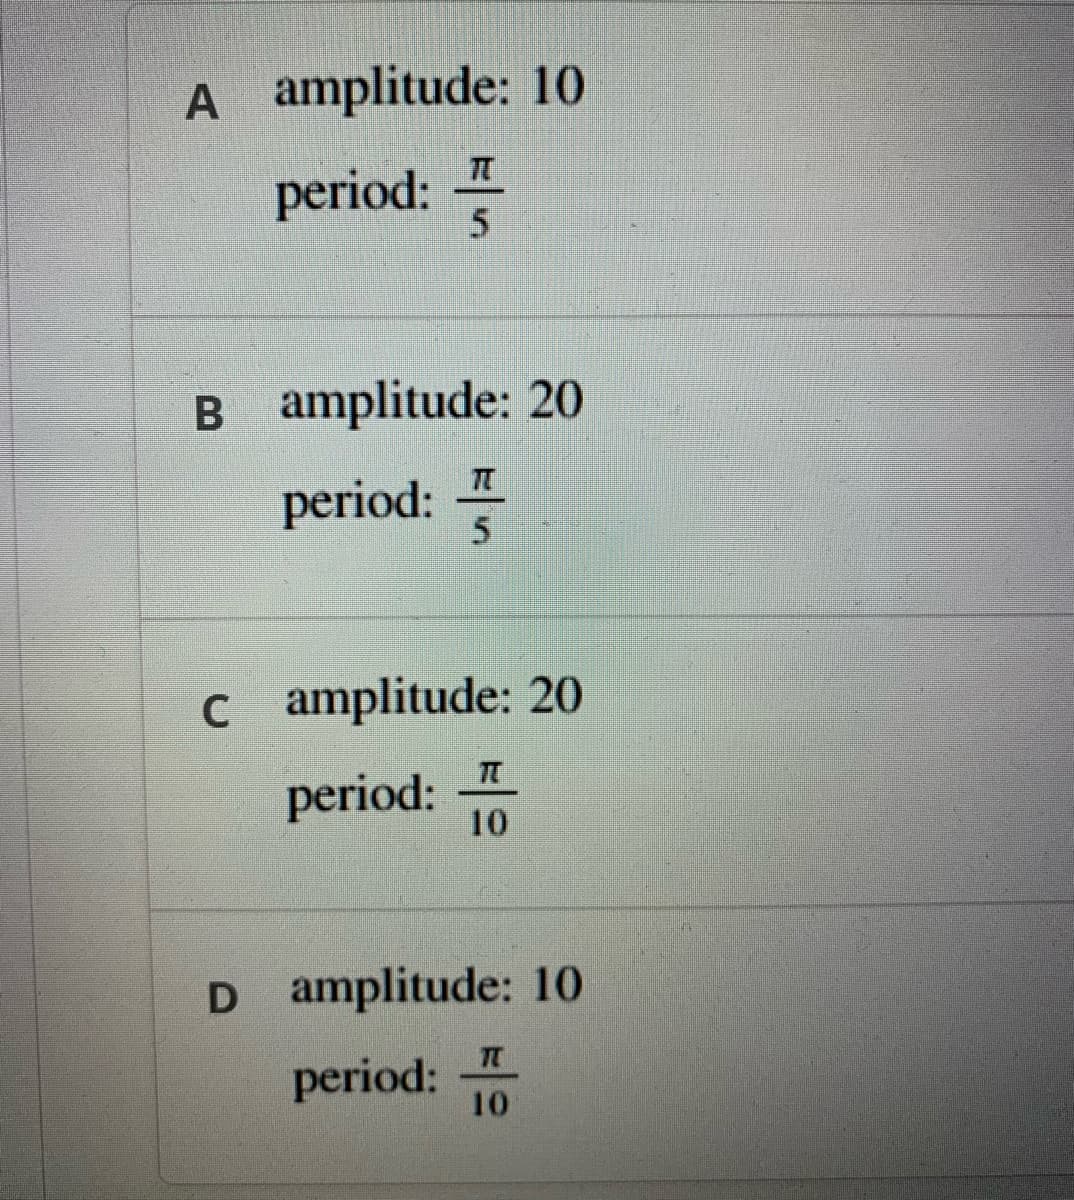 A amplitude: 10
period:
B amplitude: 20
period: -
5.
c amplitude: 20
period:
10
D amplitude: 10
period:
10
